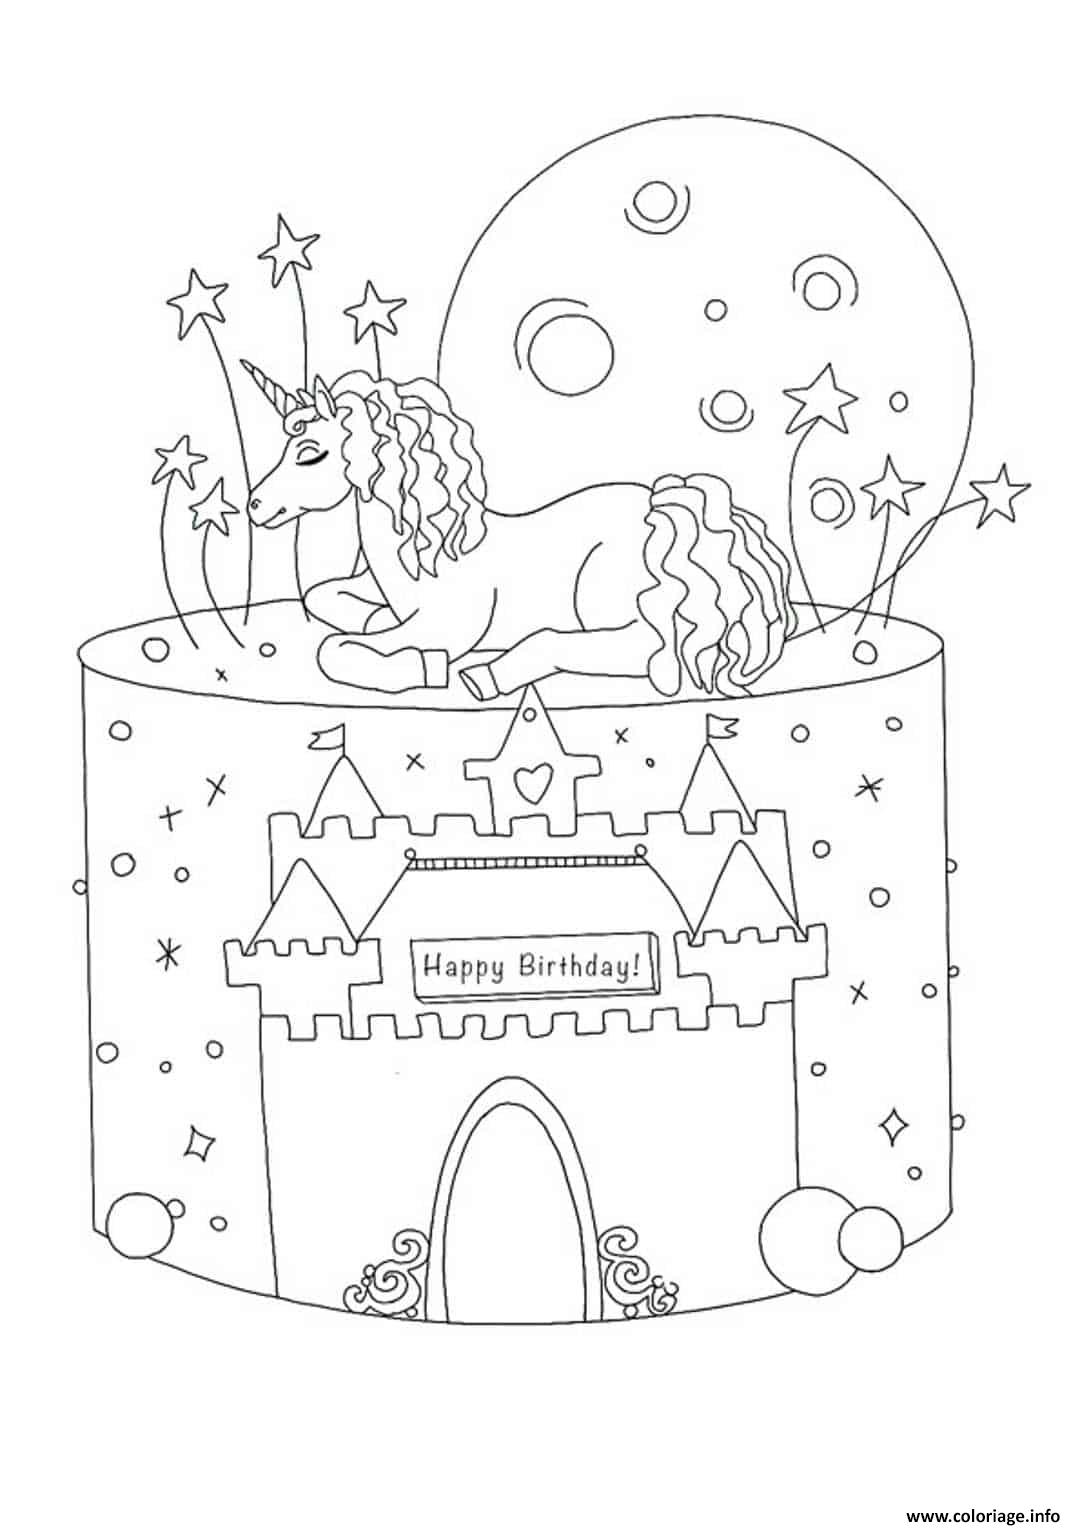 coloriage gateau anniversaire licorne avec chateau dessin a imprimer les sams